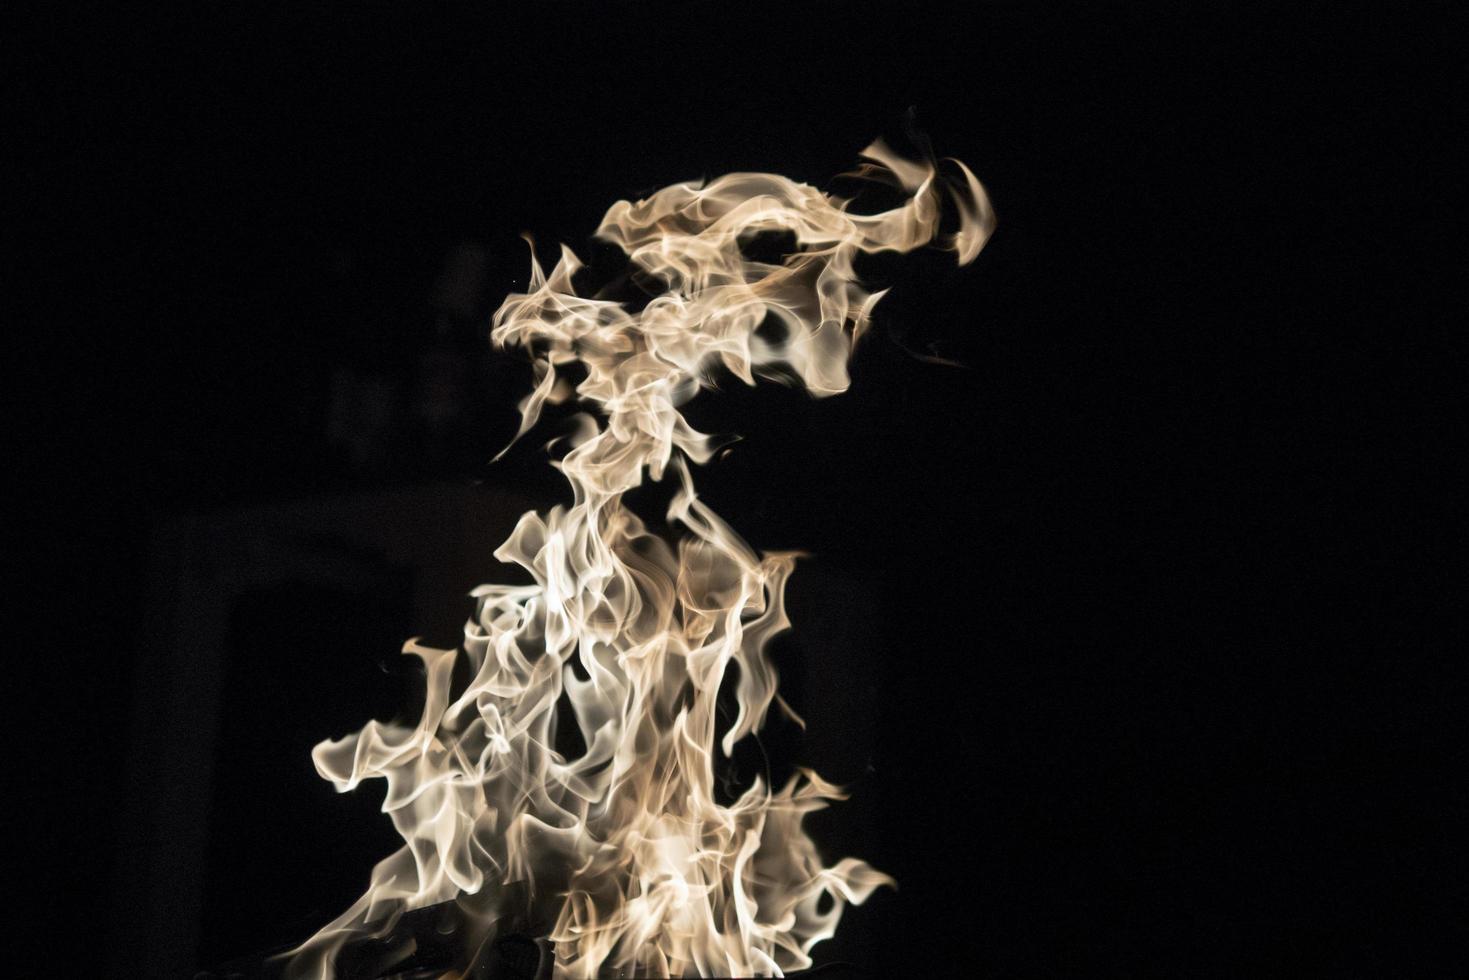 línguas frias de chamas dançam à noite foto